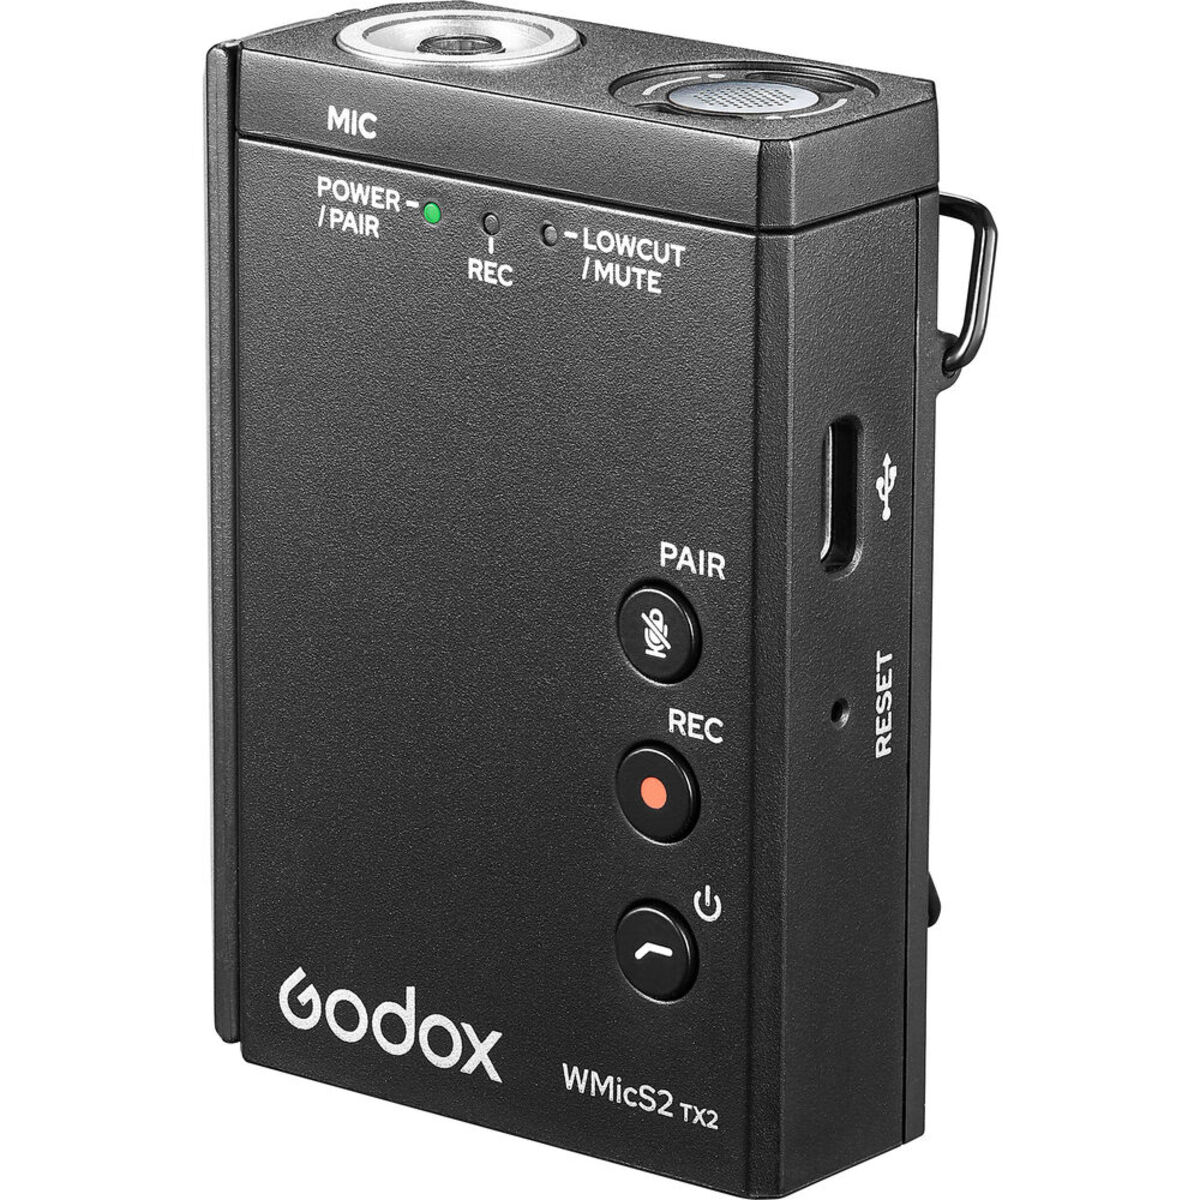 Godox WMicS2 Kit 1 UHF Wireless Microphone System